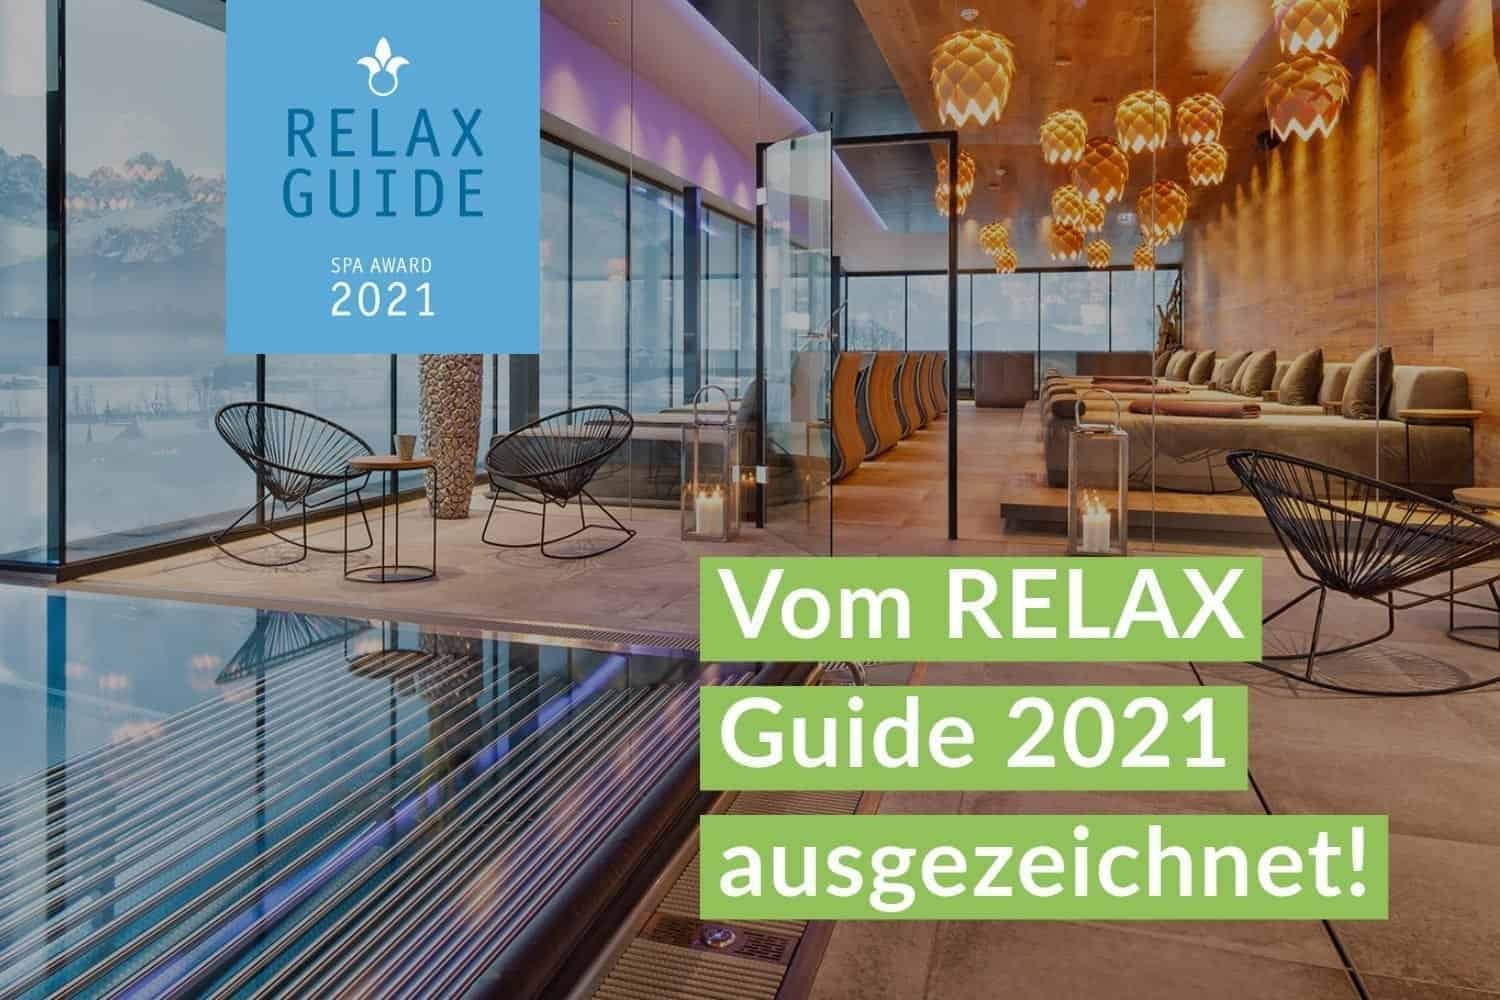 Vom relax guide 2021 ausgezeichnet!